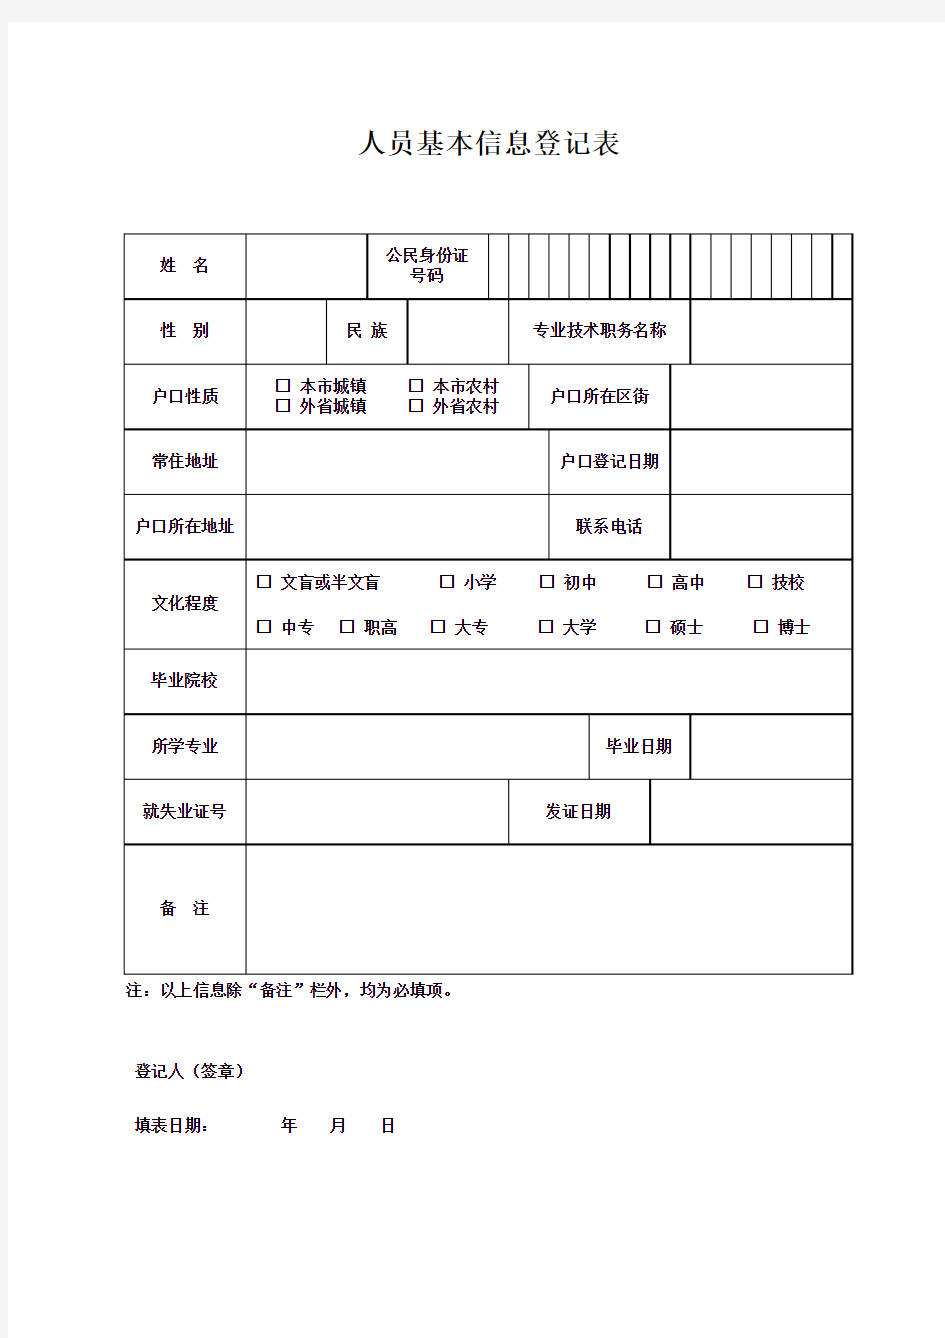 天津人员基本信息登记表